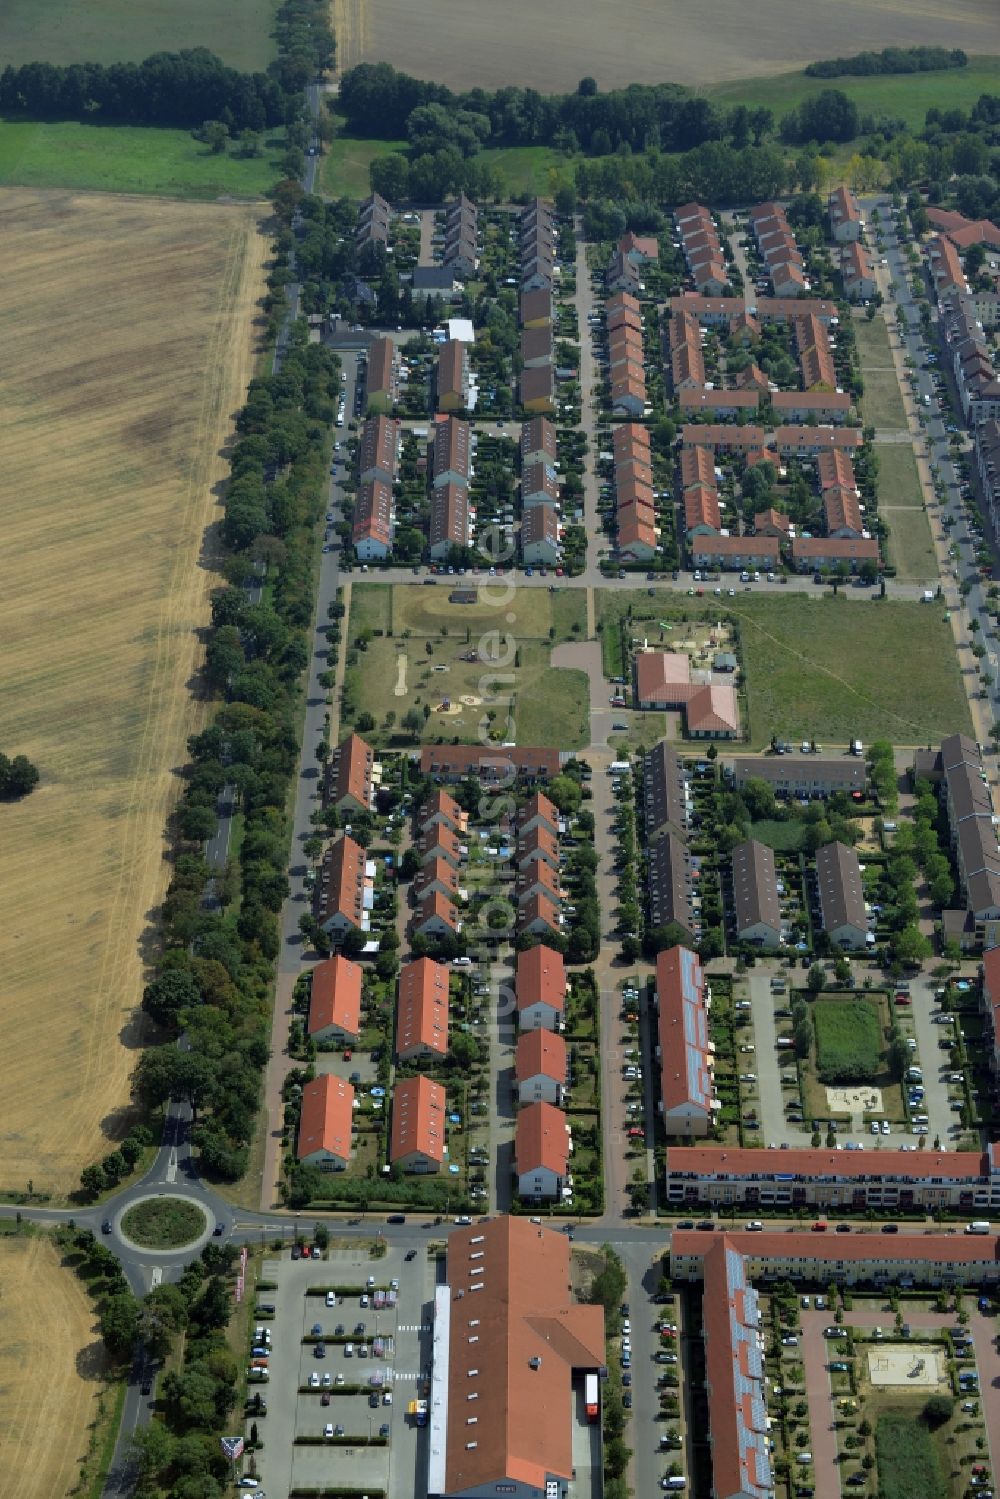 Hoppegarten aus der Vogelperspektive: Wohngebiet am nordöstlichen Rand von Hoppegarten im Bundesland Brandenburg